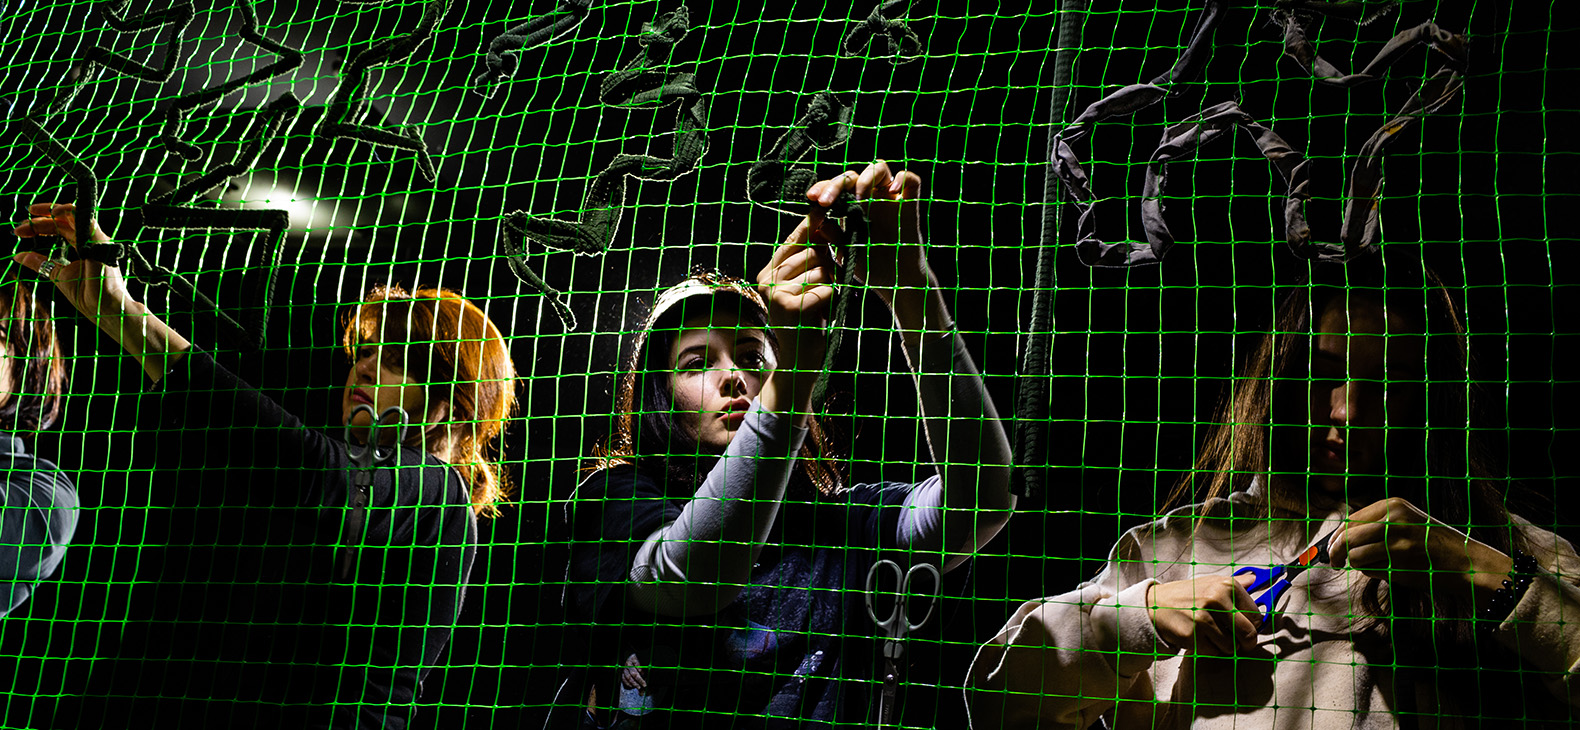 The Thin Line / Der schmale Grat - Ausstellung mit ukrainischen Fotografien; Bild: Freiwillige beim Knüpfen von Tarnnetzen, junge Frauen im Scheinwerferlicht hinter einem grünen Netz; Fotografin: Kateryna Moskalyuk 